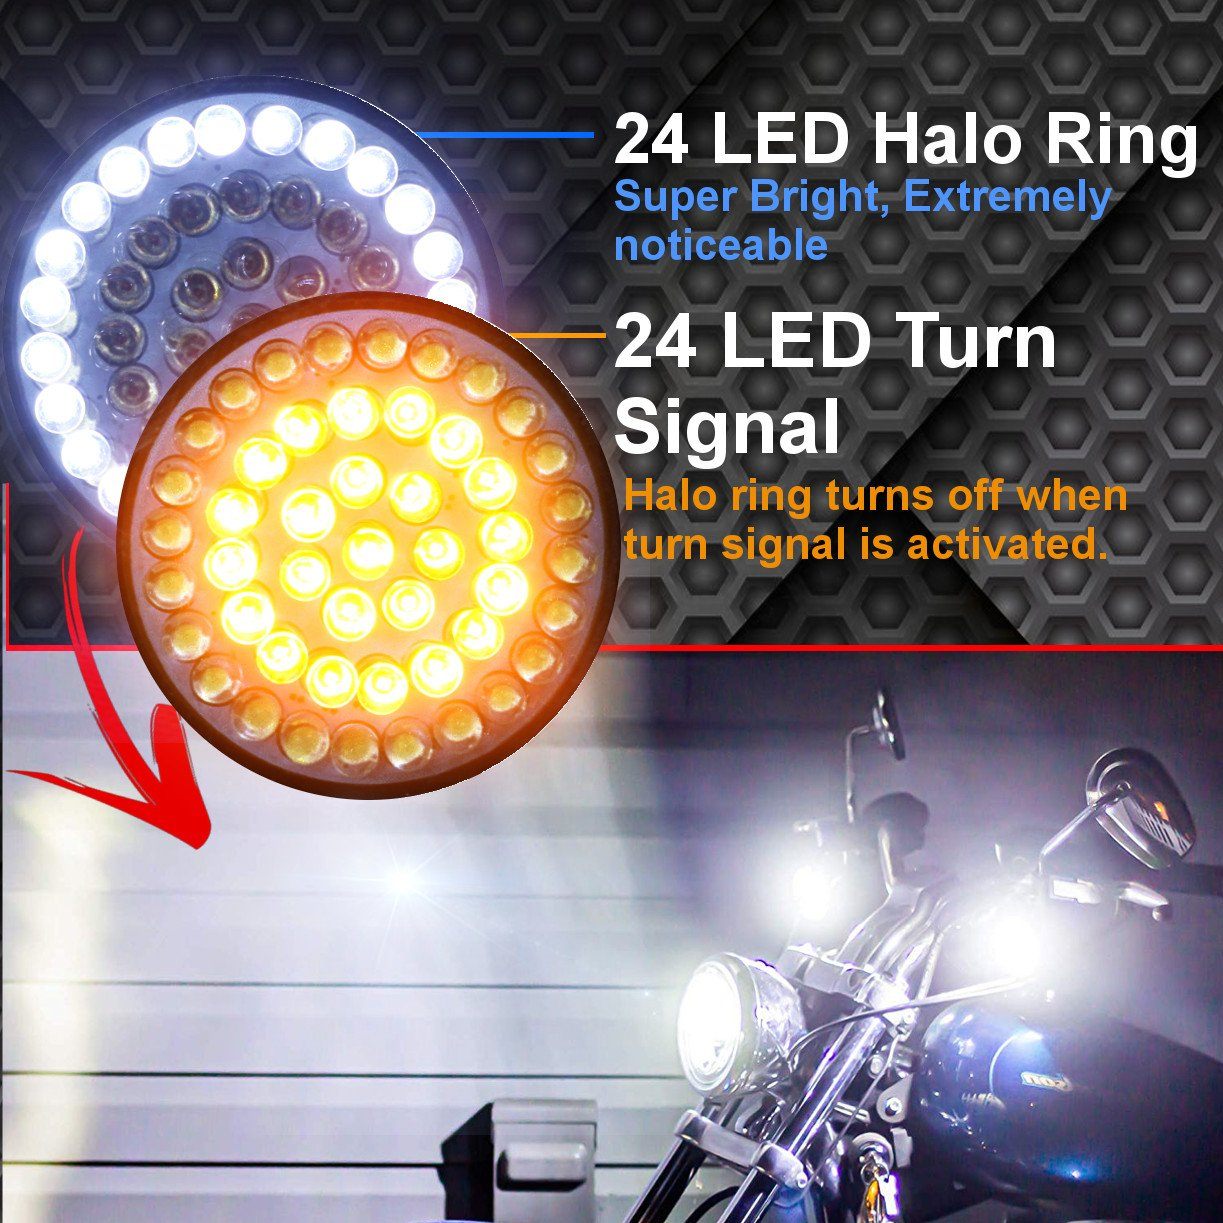 2” LED Front Turn Signals - Eagle Lights 2” Bullet Style Front LED Turn Signal W/ Running Light Kit For Harley Davidson - (2) Front Turn Signals